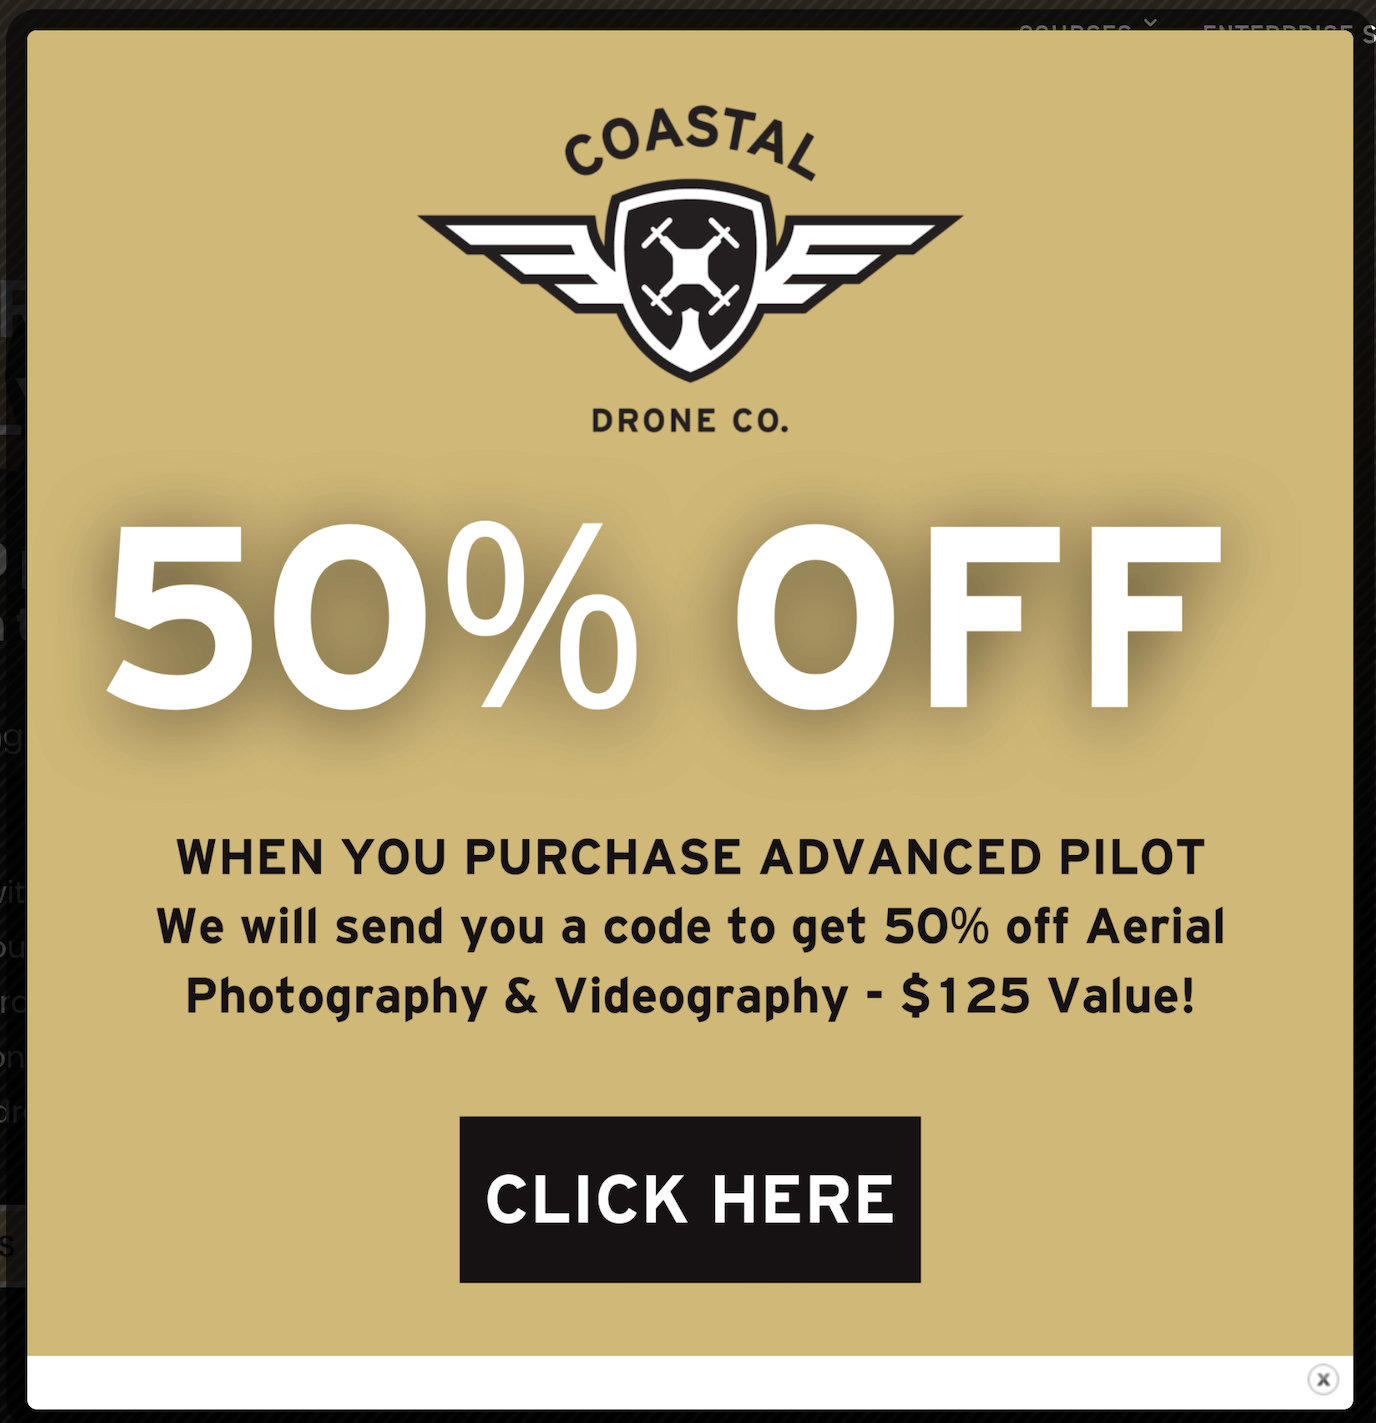 Coastal Drone discount pricing